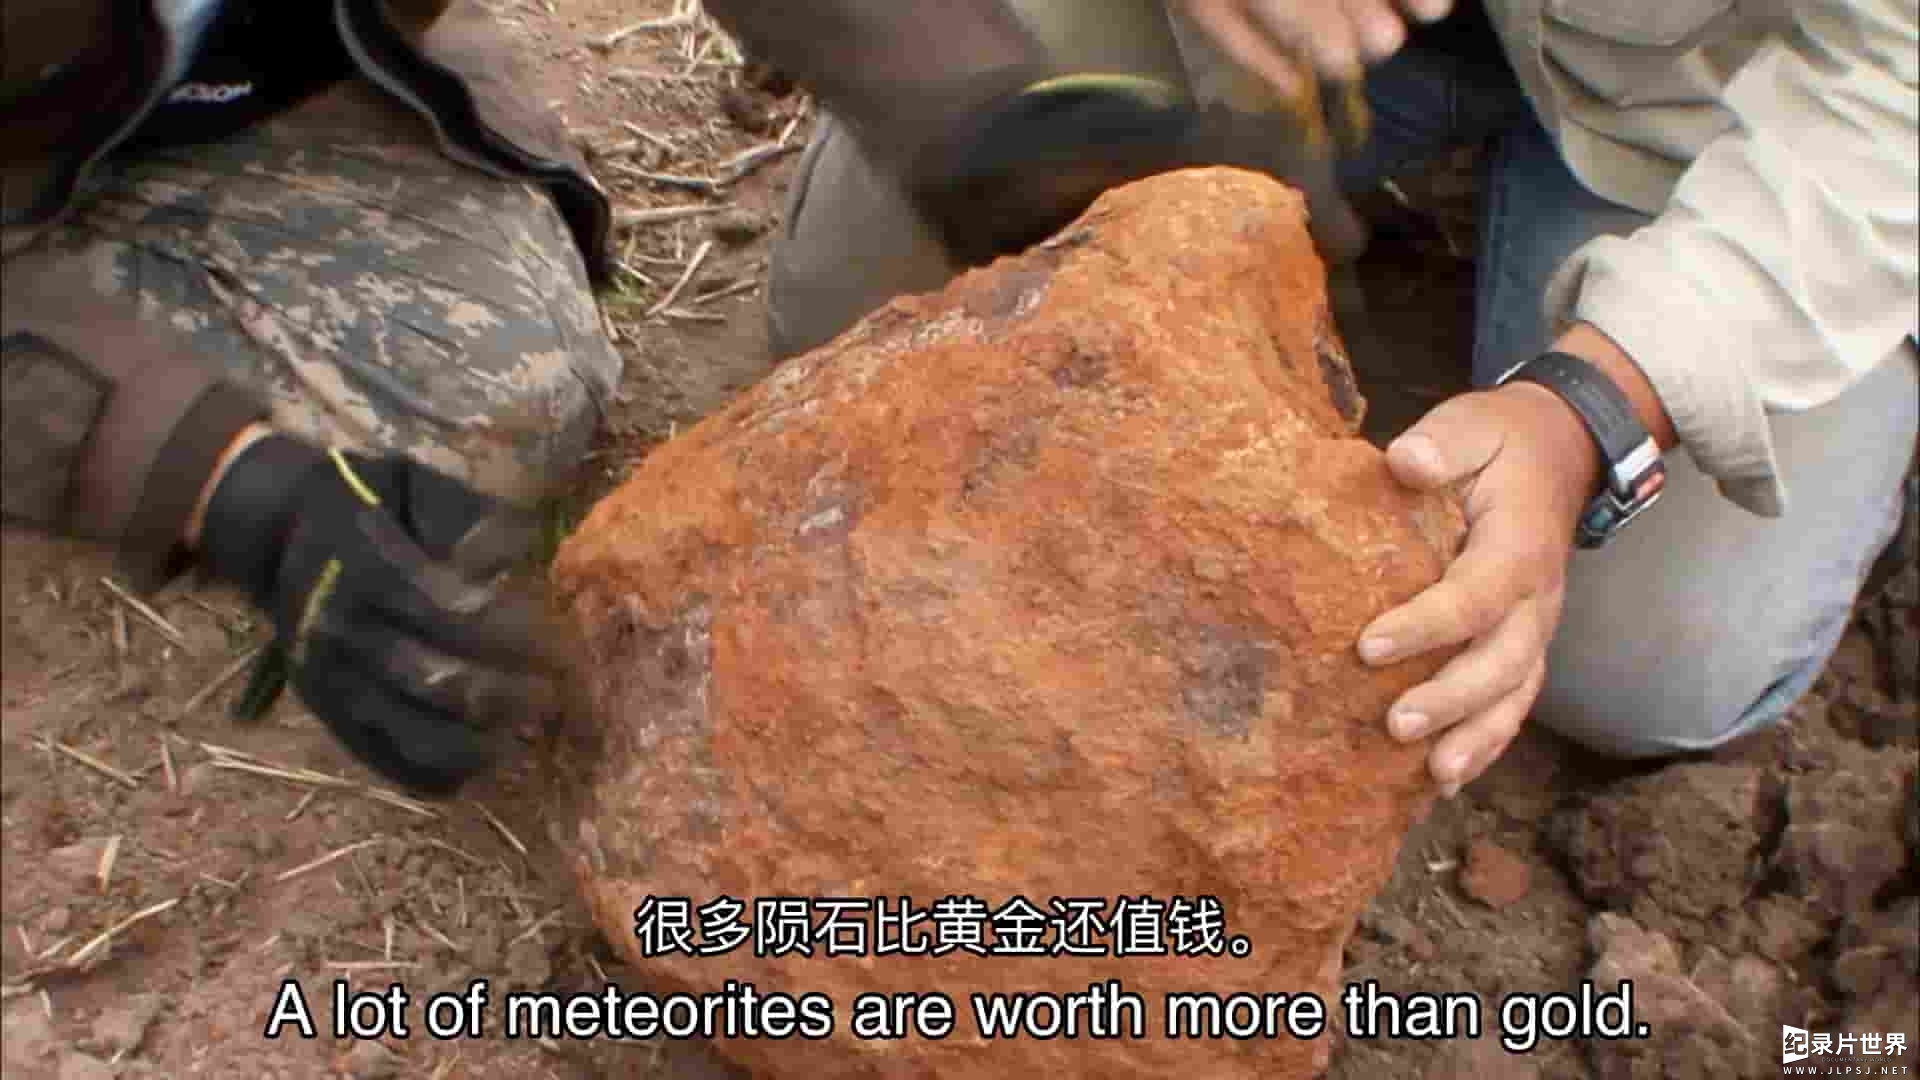 科学频道《陨石猎人 Meteorite Men》第1-3季全23集